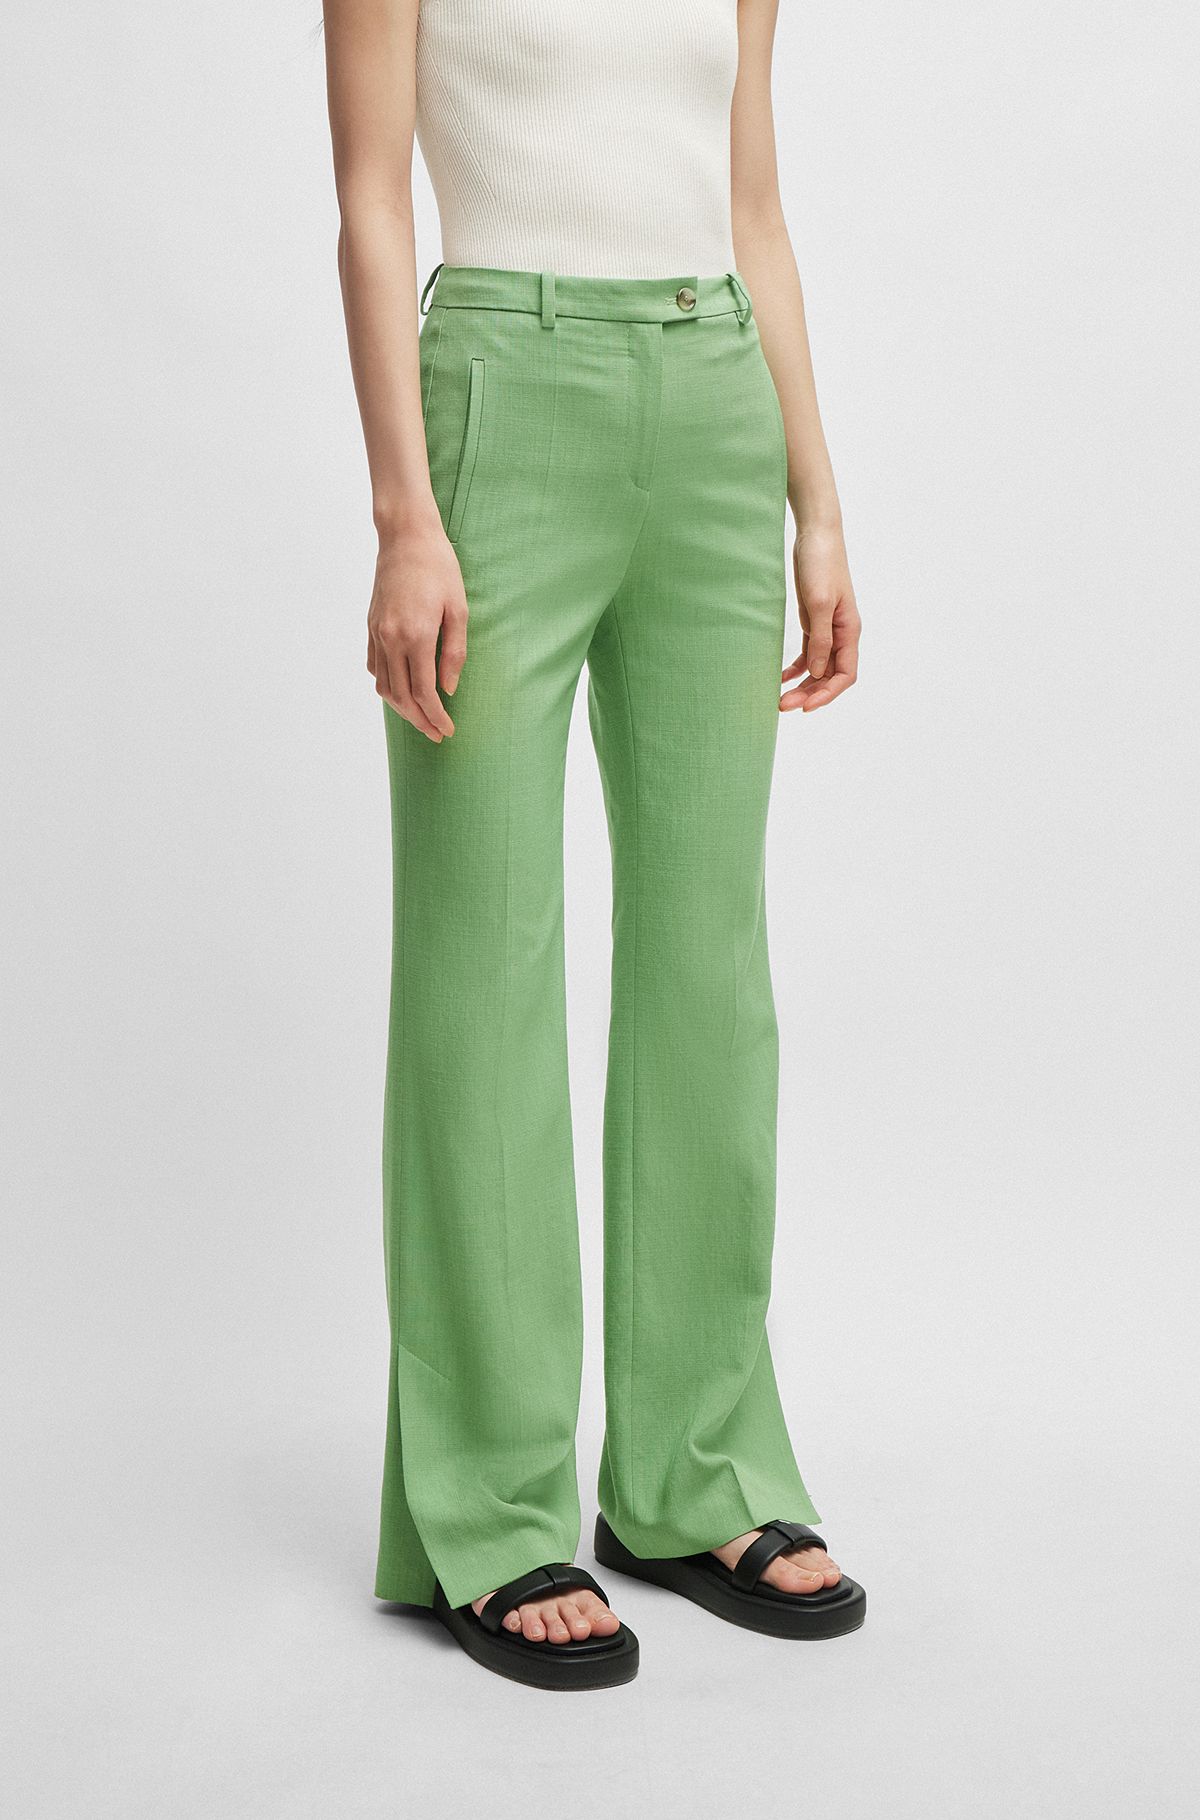 Pants in Green by HUGO BOSS | Women